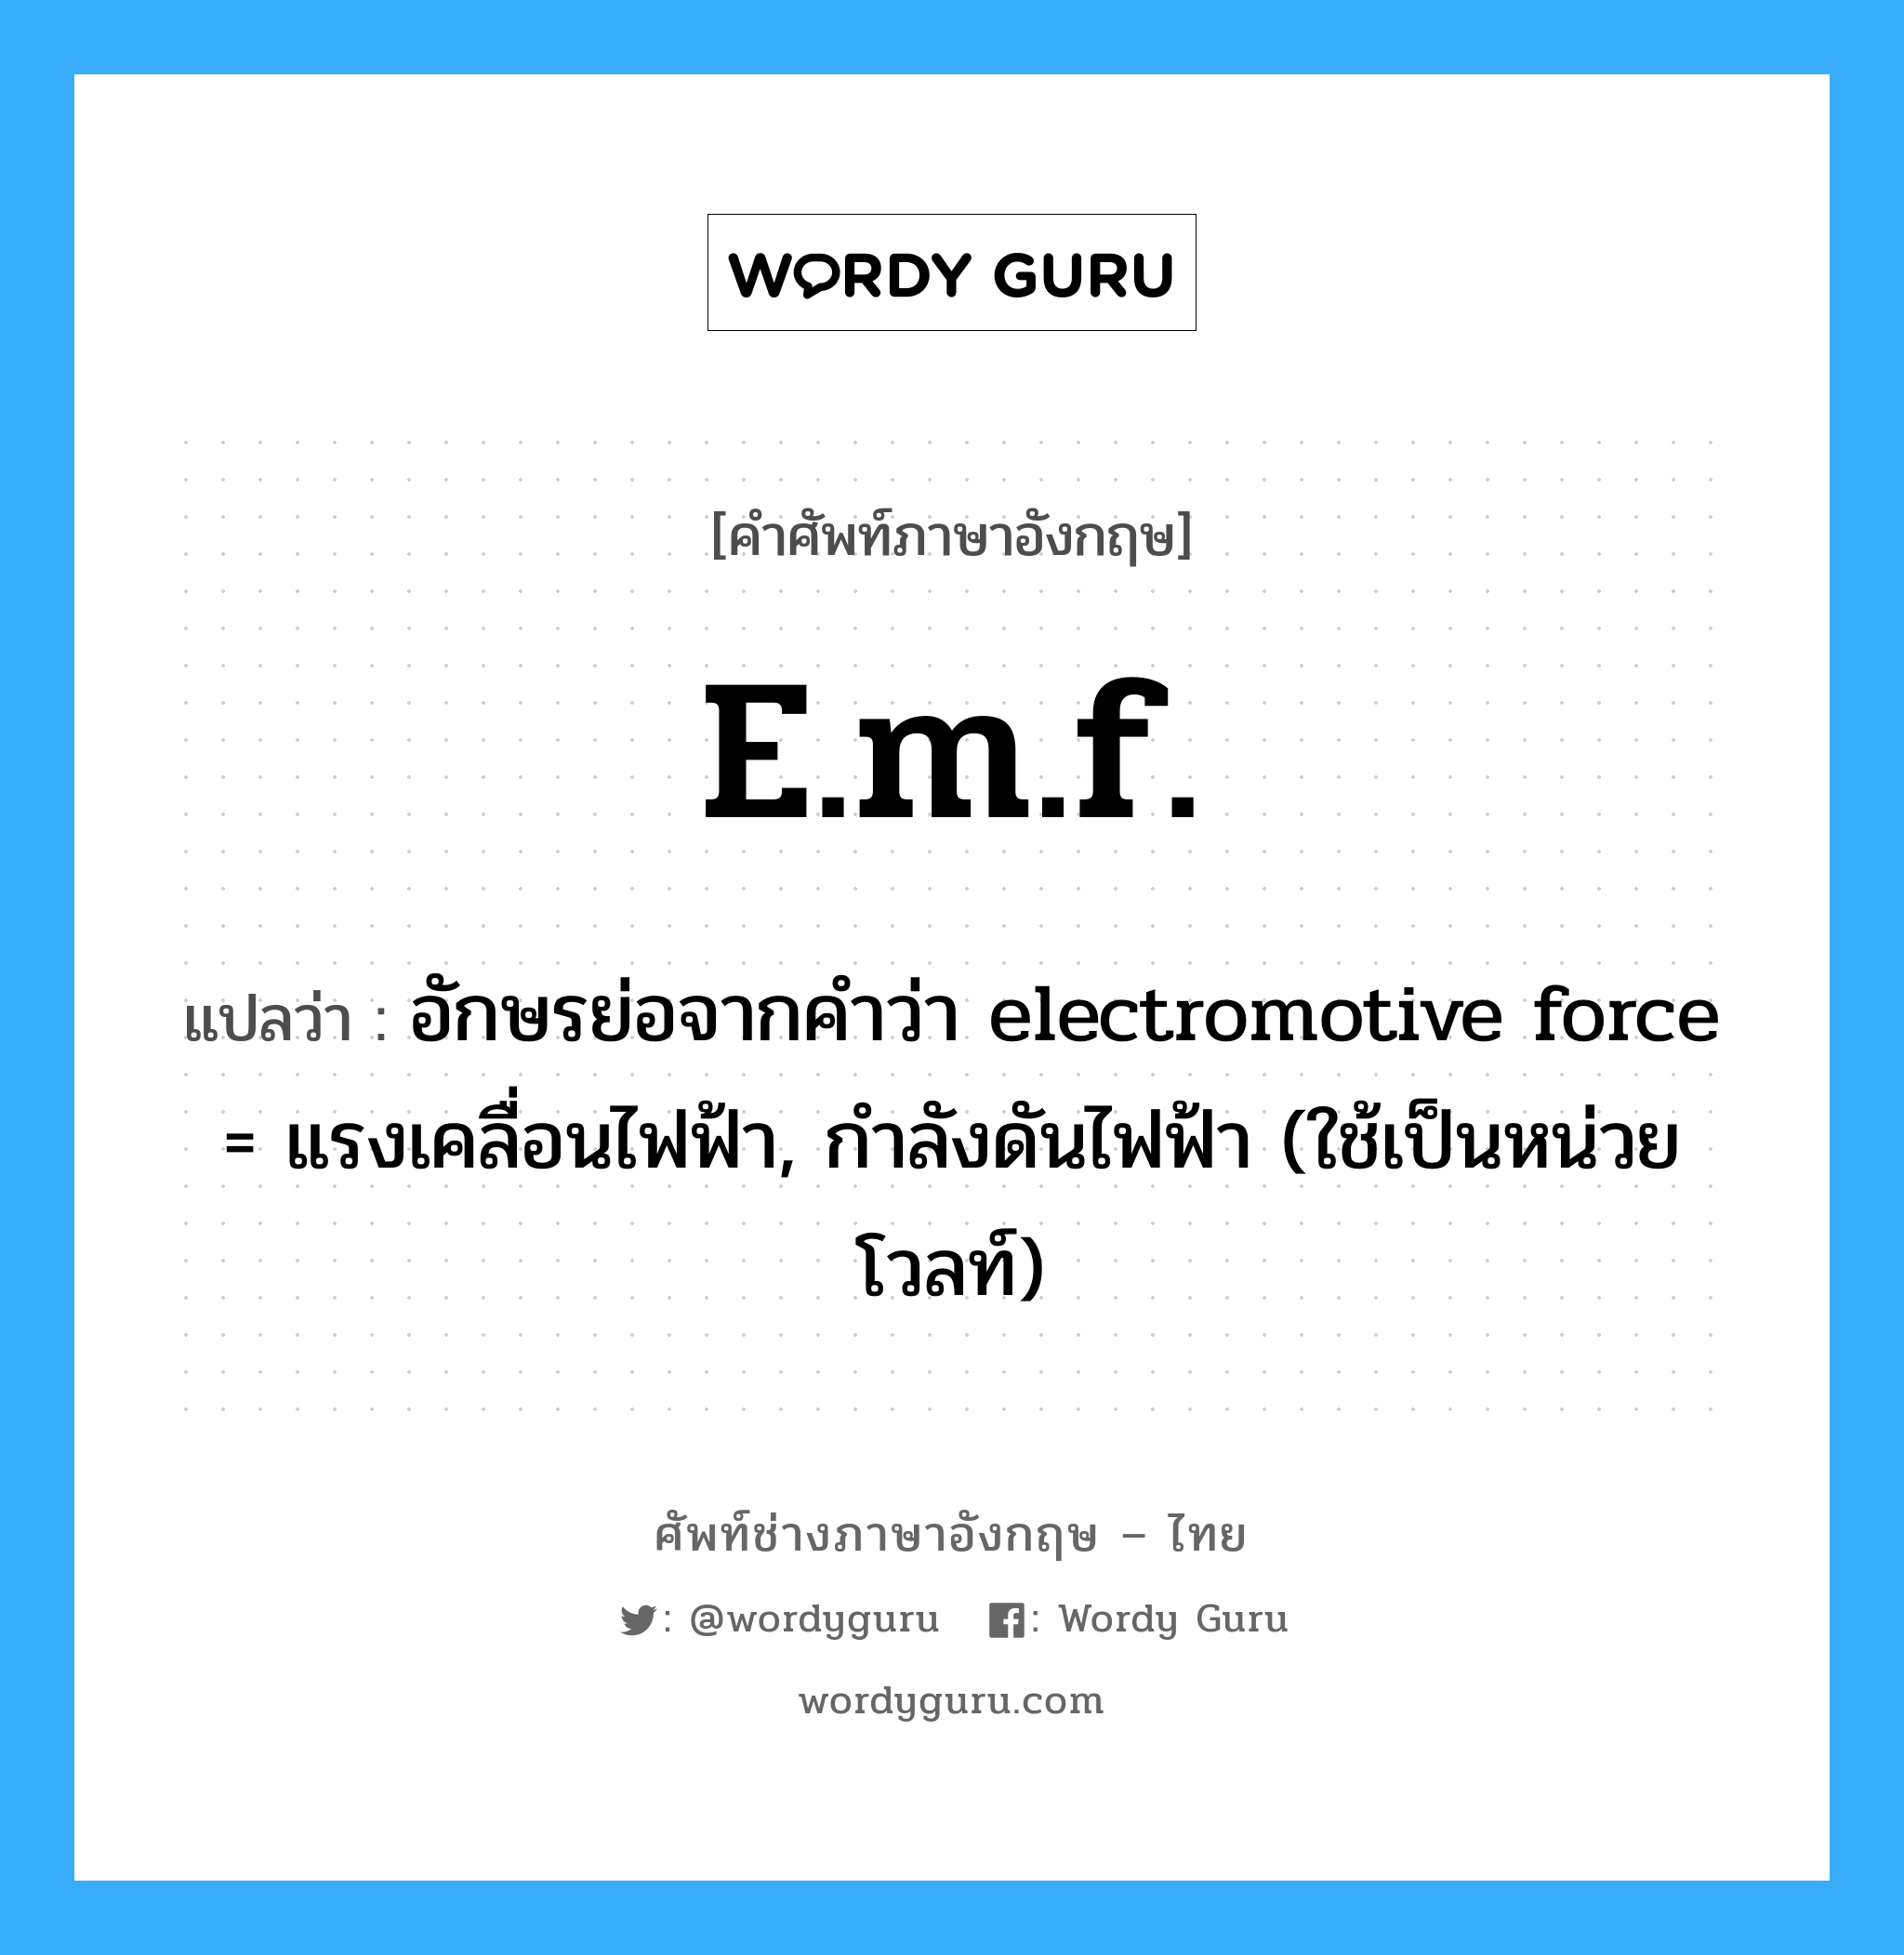 e.m.f. แปลว่า?, คำศัพท์ช่างภาษาอังกฤษ - ไทย e.m.f. คำศัพท์ภาษาอังกฤษ e.m.f. แปลว่า อักษรย่อจากคำว่า electromotive force = แรงเคลื่อนไฟฟ้า, กำลังดันไฟฟ้า (ใช้เป็นหน่วยโวลท์)